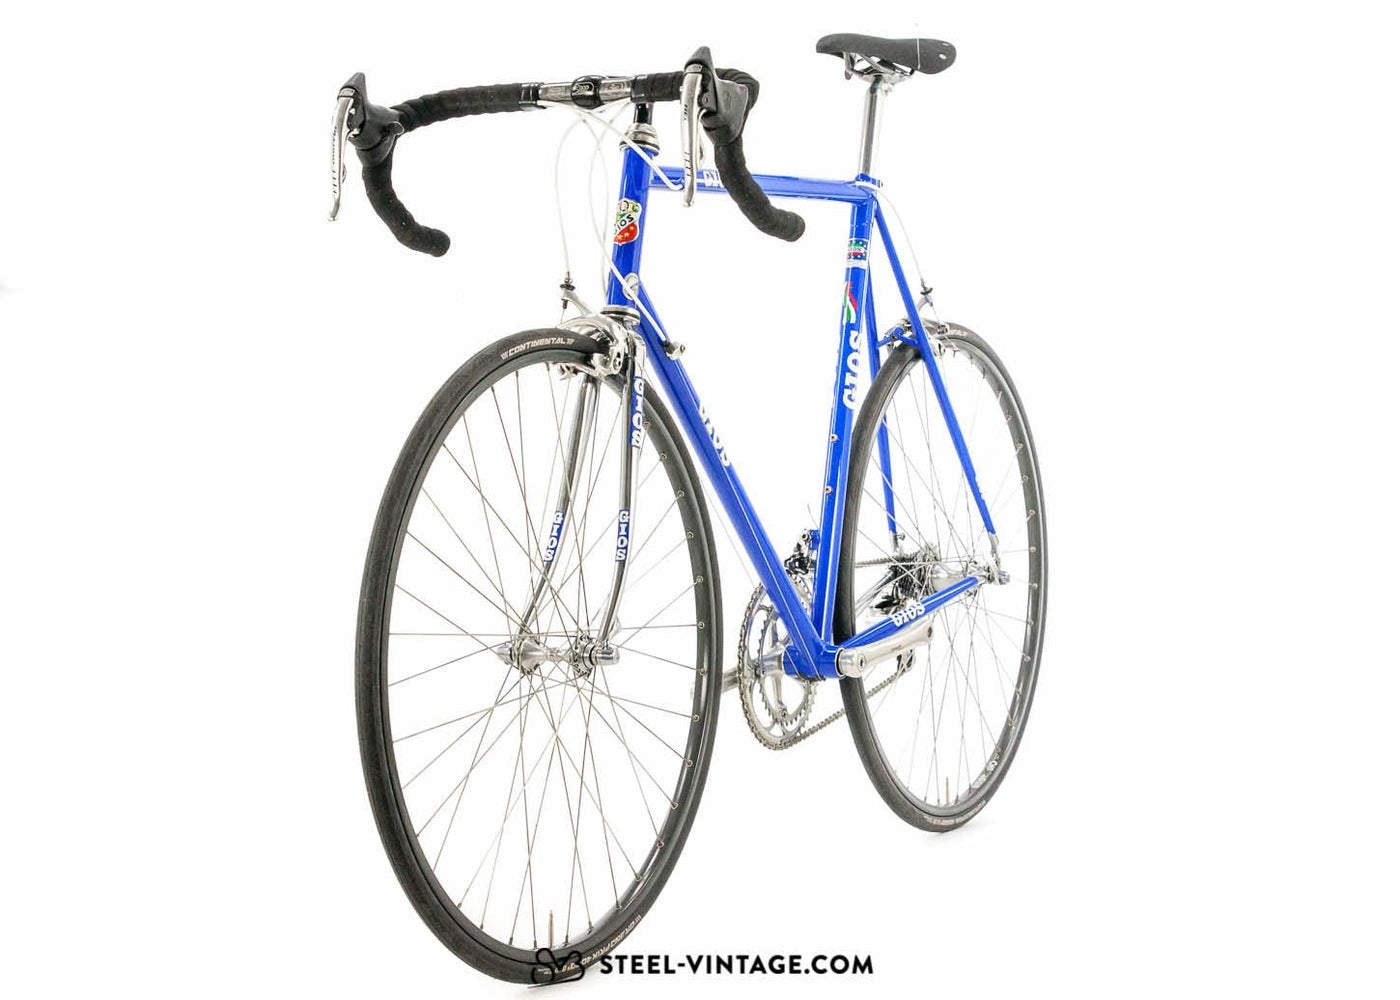 Gios Team Kelme Compact 1995 Vintage Bicycle - Steel Vintage Bikes